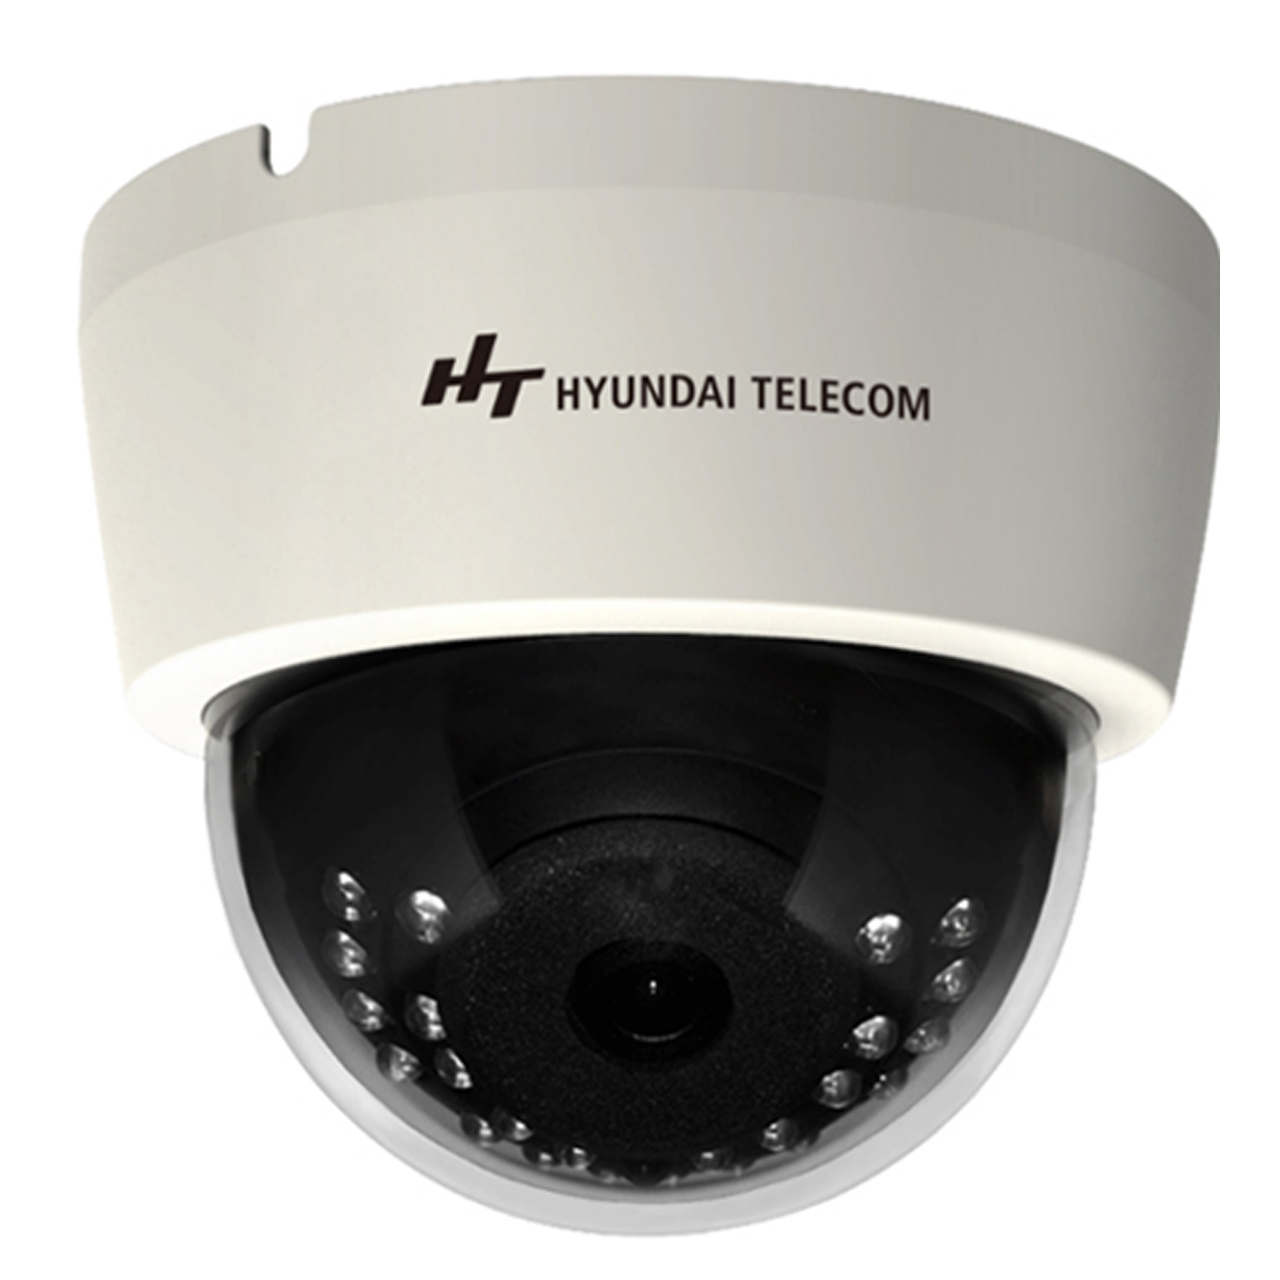 دوربین مداربسته هیوندای تحت شبکه indoor dome مدل HTD2312IPTI